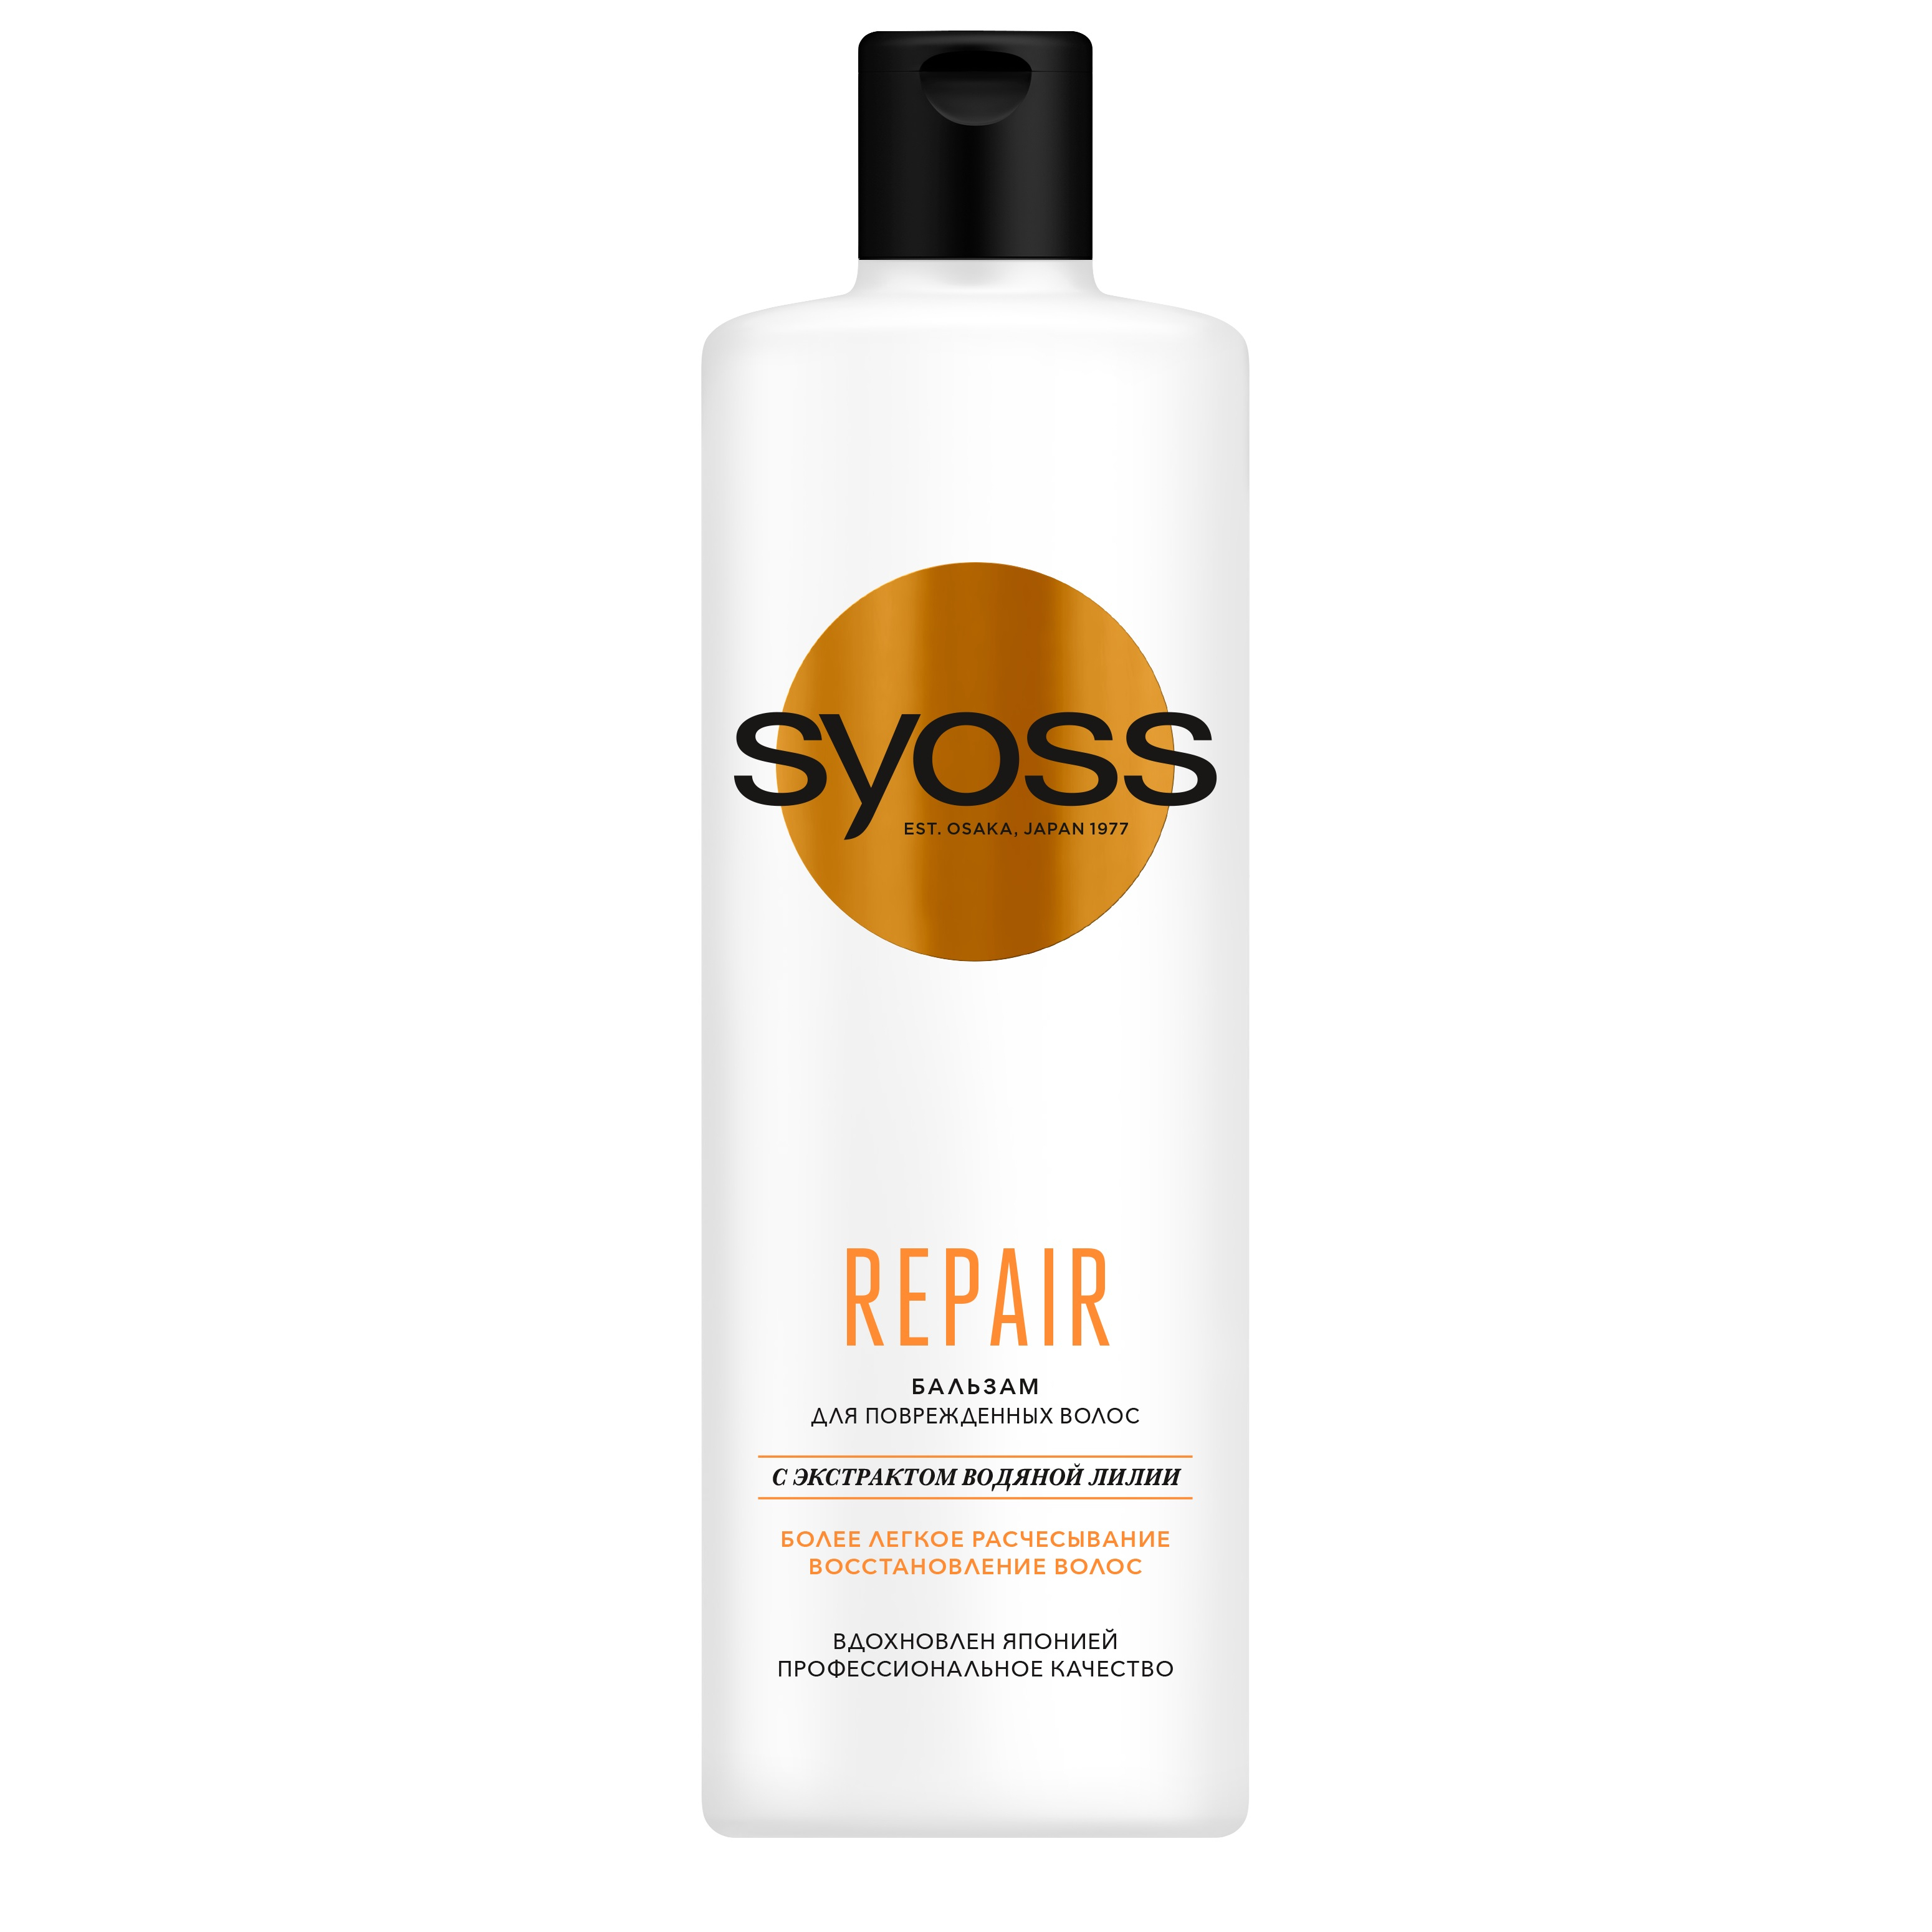 Бальзам для волос Syoss Repair восстанавливающий 450 мл бальзам уход восстанавливающий для волос 380 мл